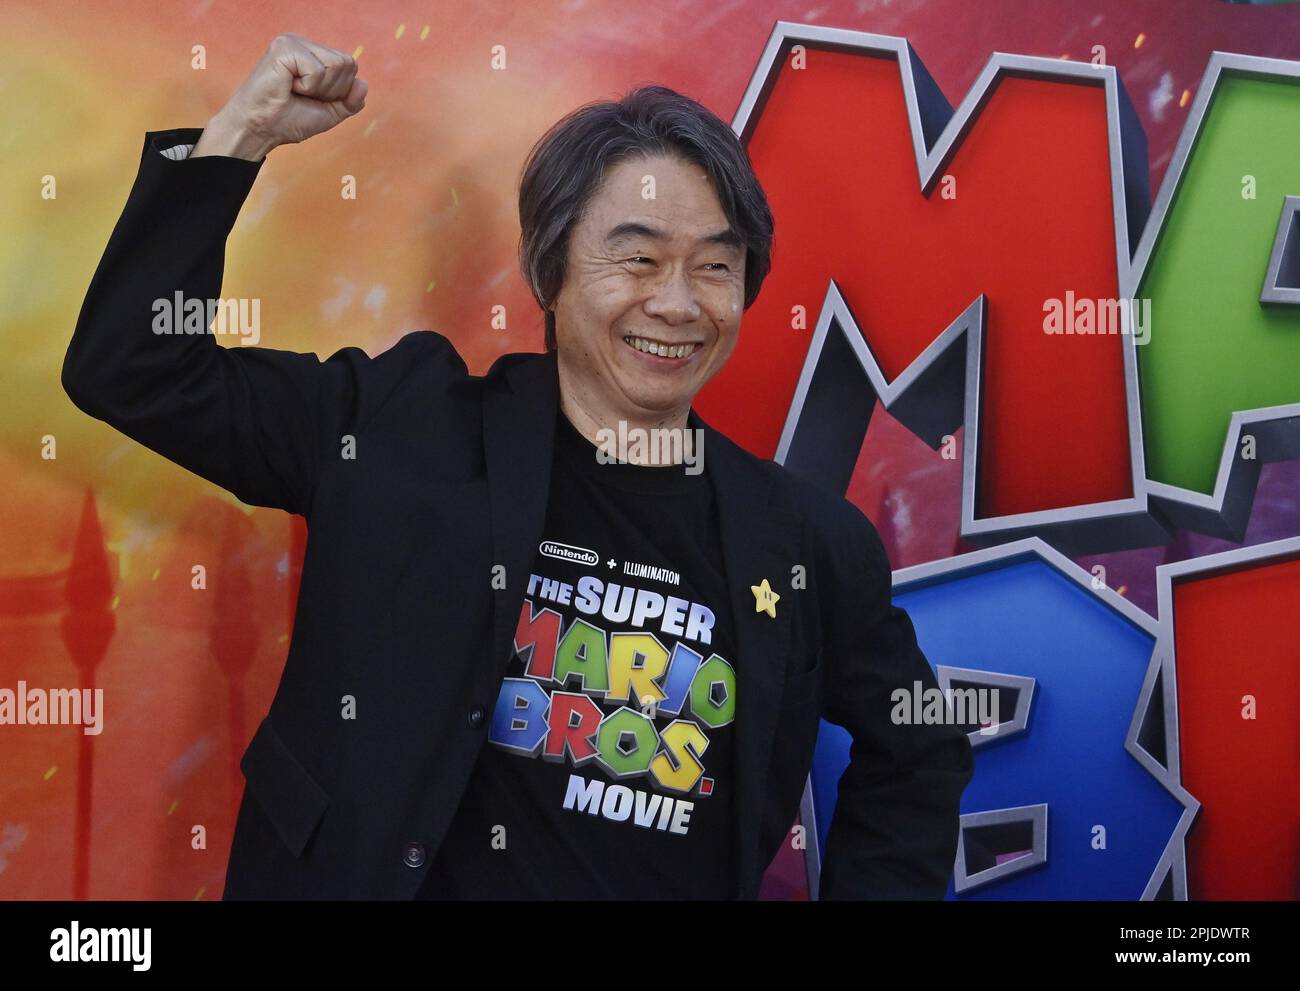 31 Shigeru Miyamoto Images, Stock Photos, 3D objects, & Vectors